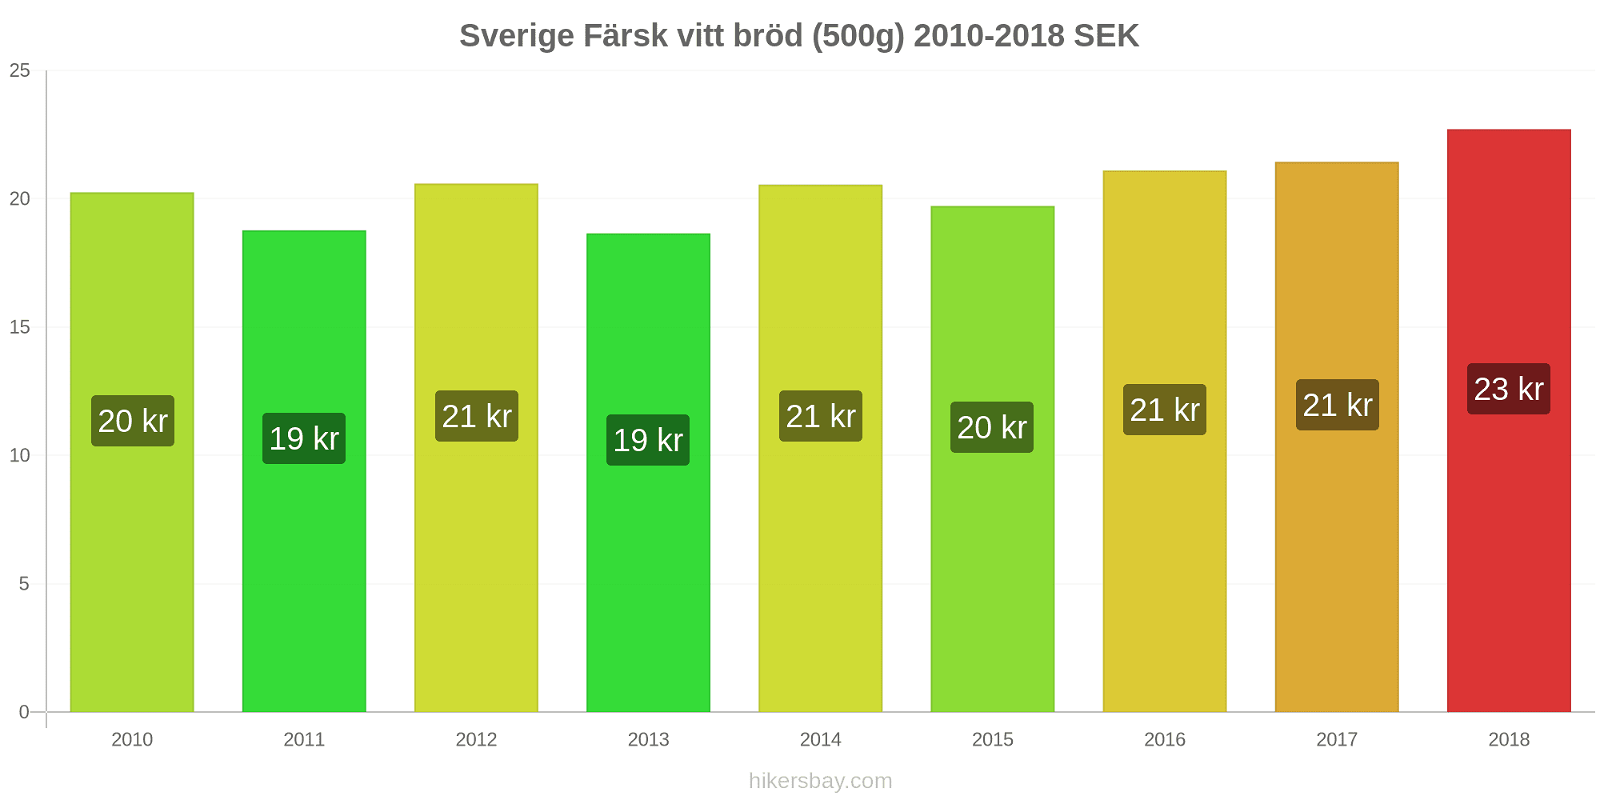 Sverige prisändringar Färsk vitt bröd (500g) hikersbay.com